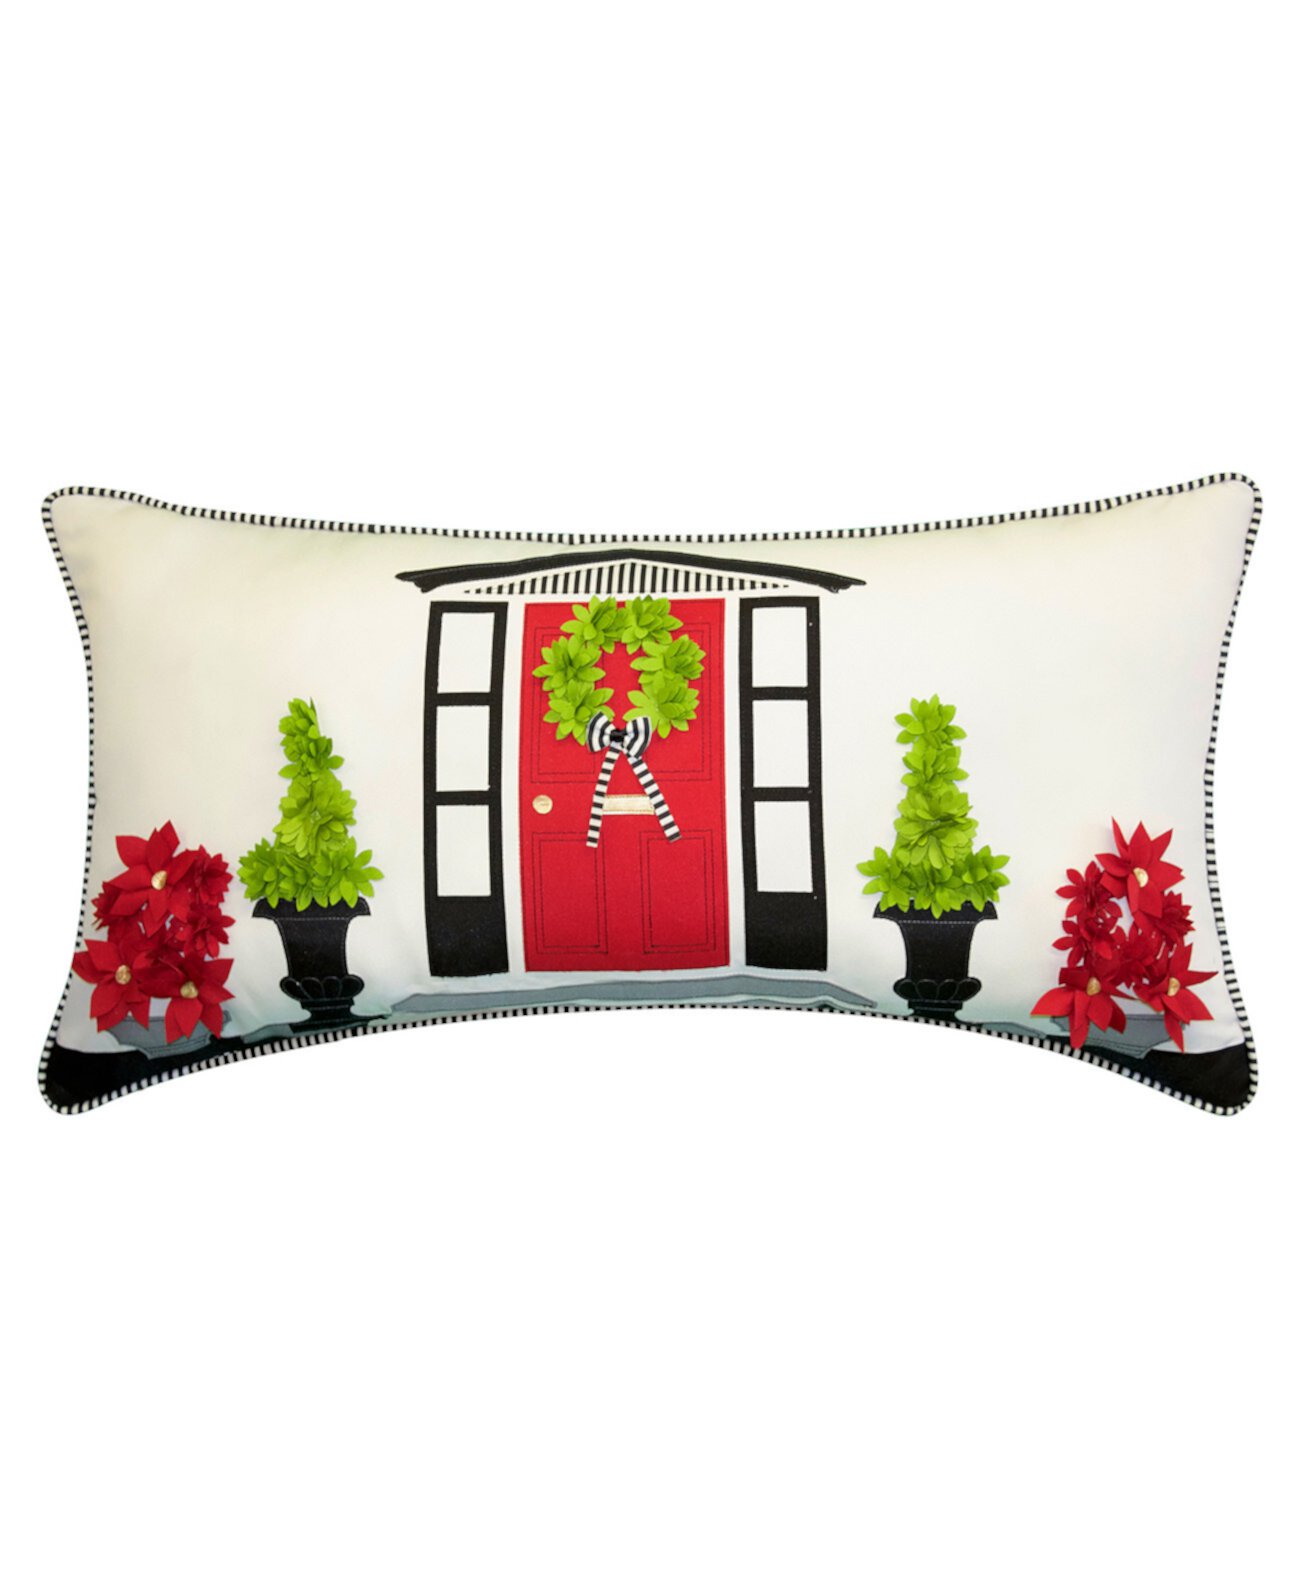 Декоративная подушка Holidays Dimensional для использования внутри и снаружи помещений, 28 x 14 дюймов Edie@Home